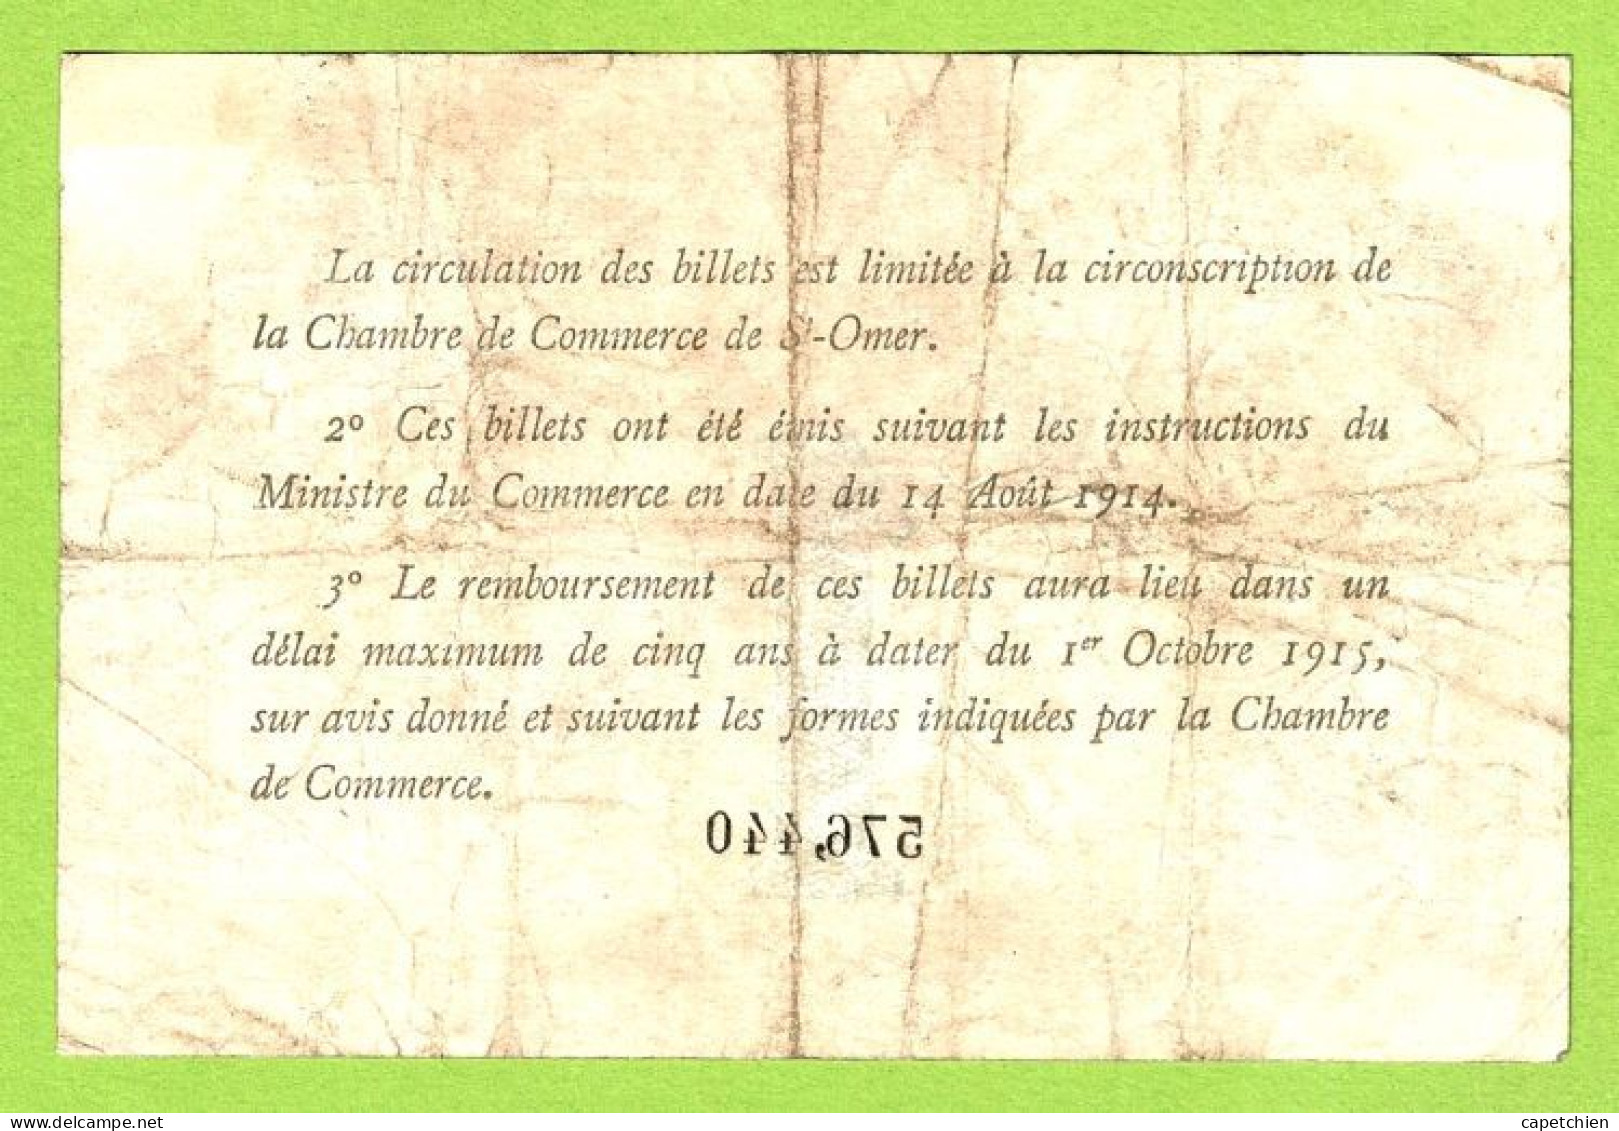 FRANCE / CHAMBRE De COMMERCE / SAINT OMER / 1 FRANC / 14 AOUT 1914 / CINQUIEME EMISSION / N° N 576440 - Chambre De Commerce